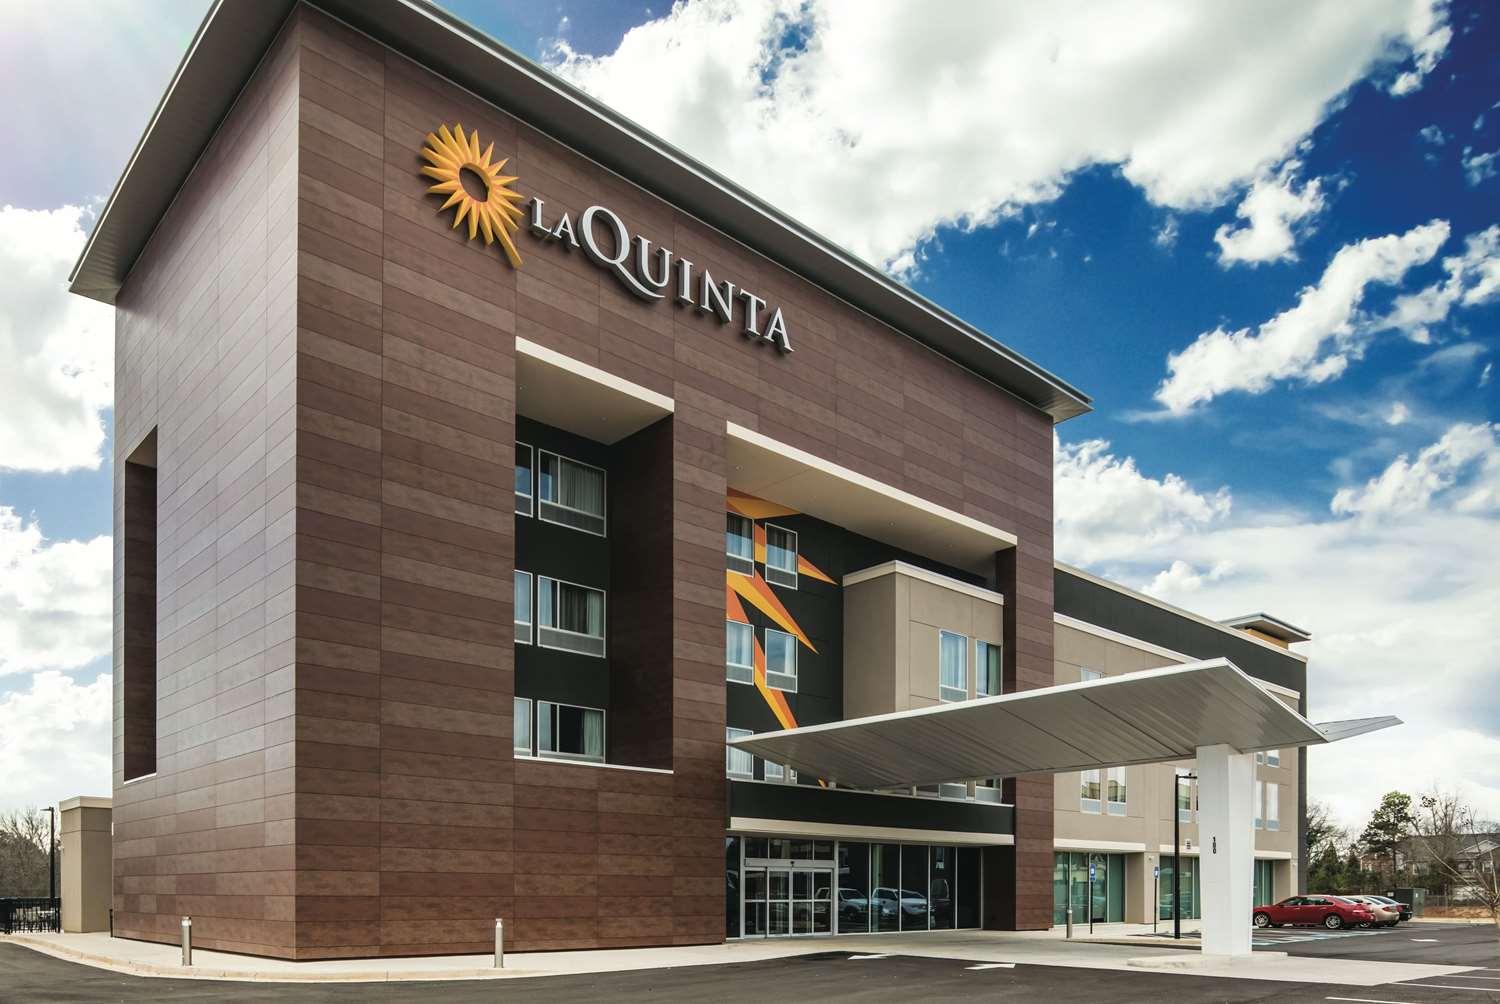 La Quinta Inn & Suites by Wyndham McDonough in McDonough, GA